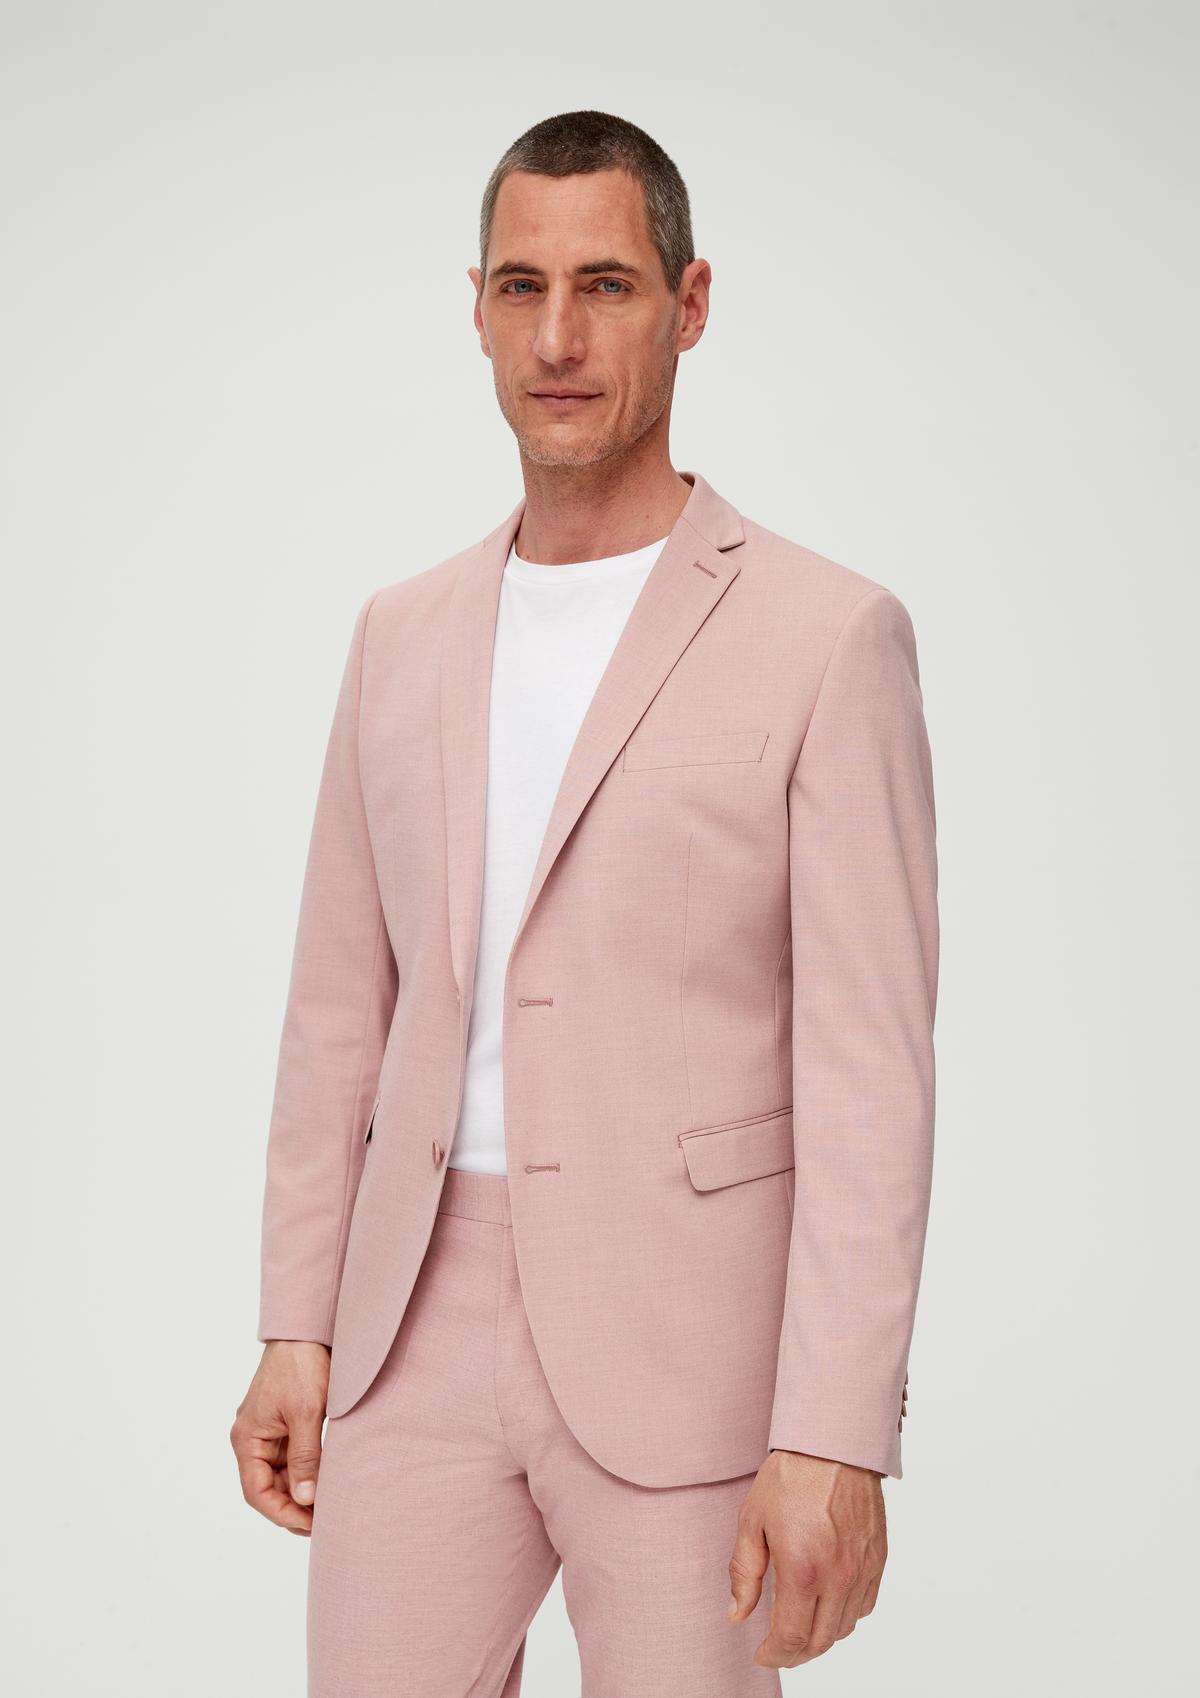 Men's Louis Vuitton Paris Tailor Made Suit 40US/UK 50IT Gray